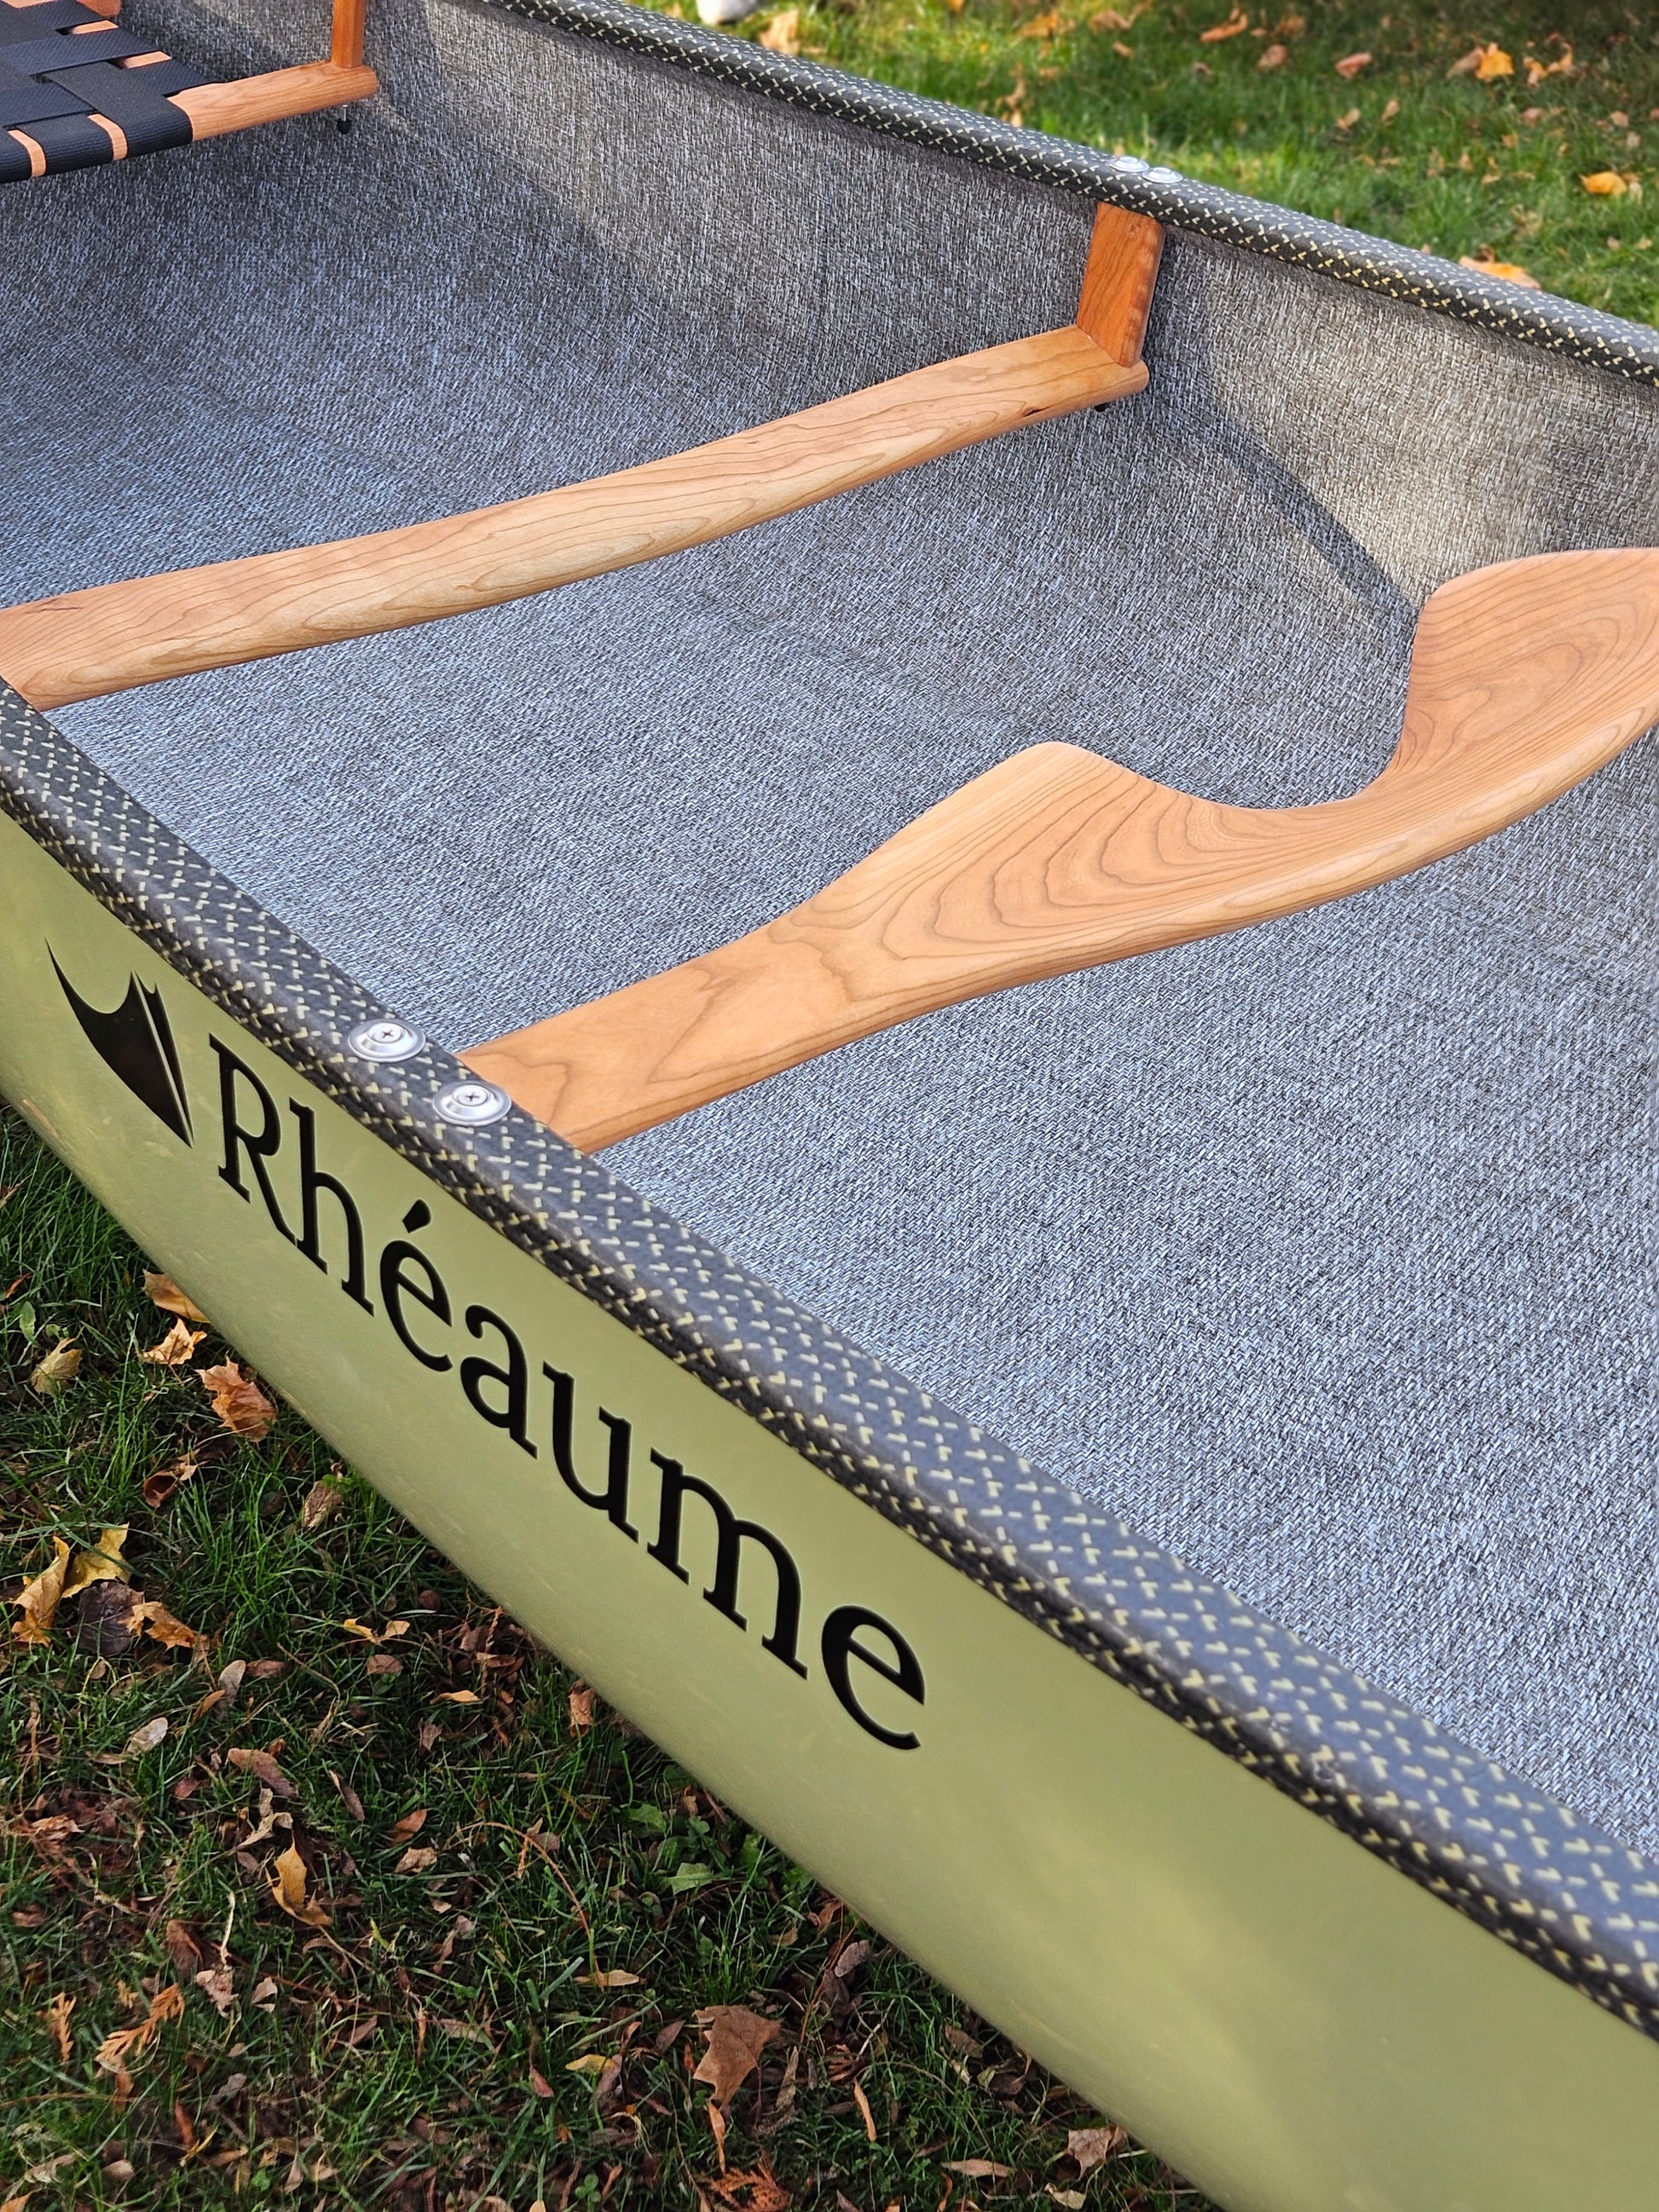 Rheaume 14' Explorer Kevlar Canoe FOR SALE!